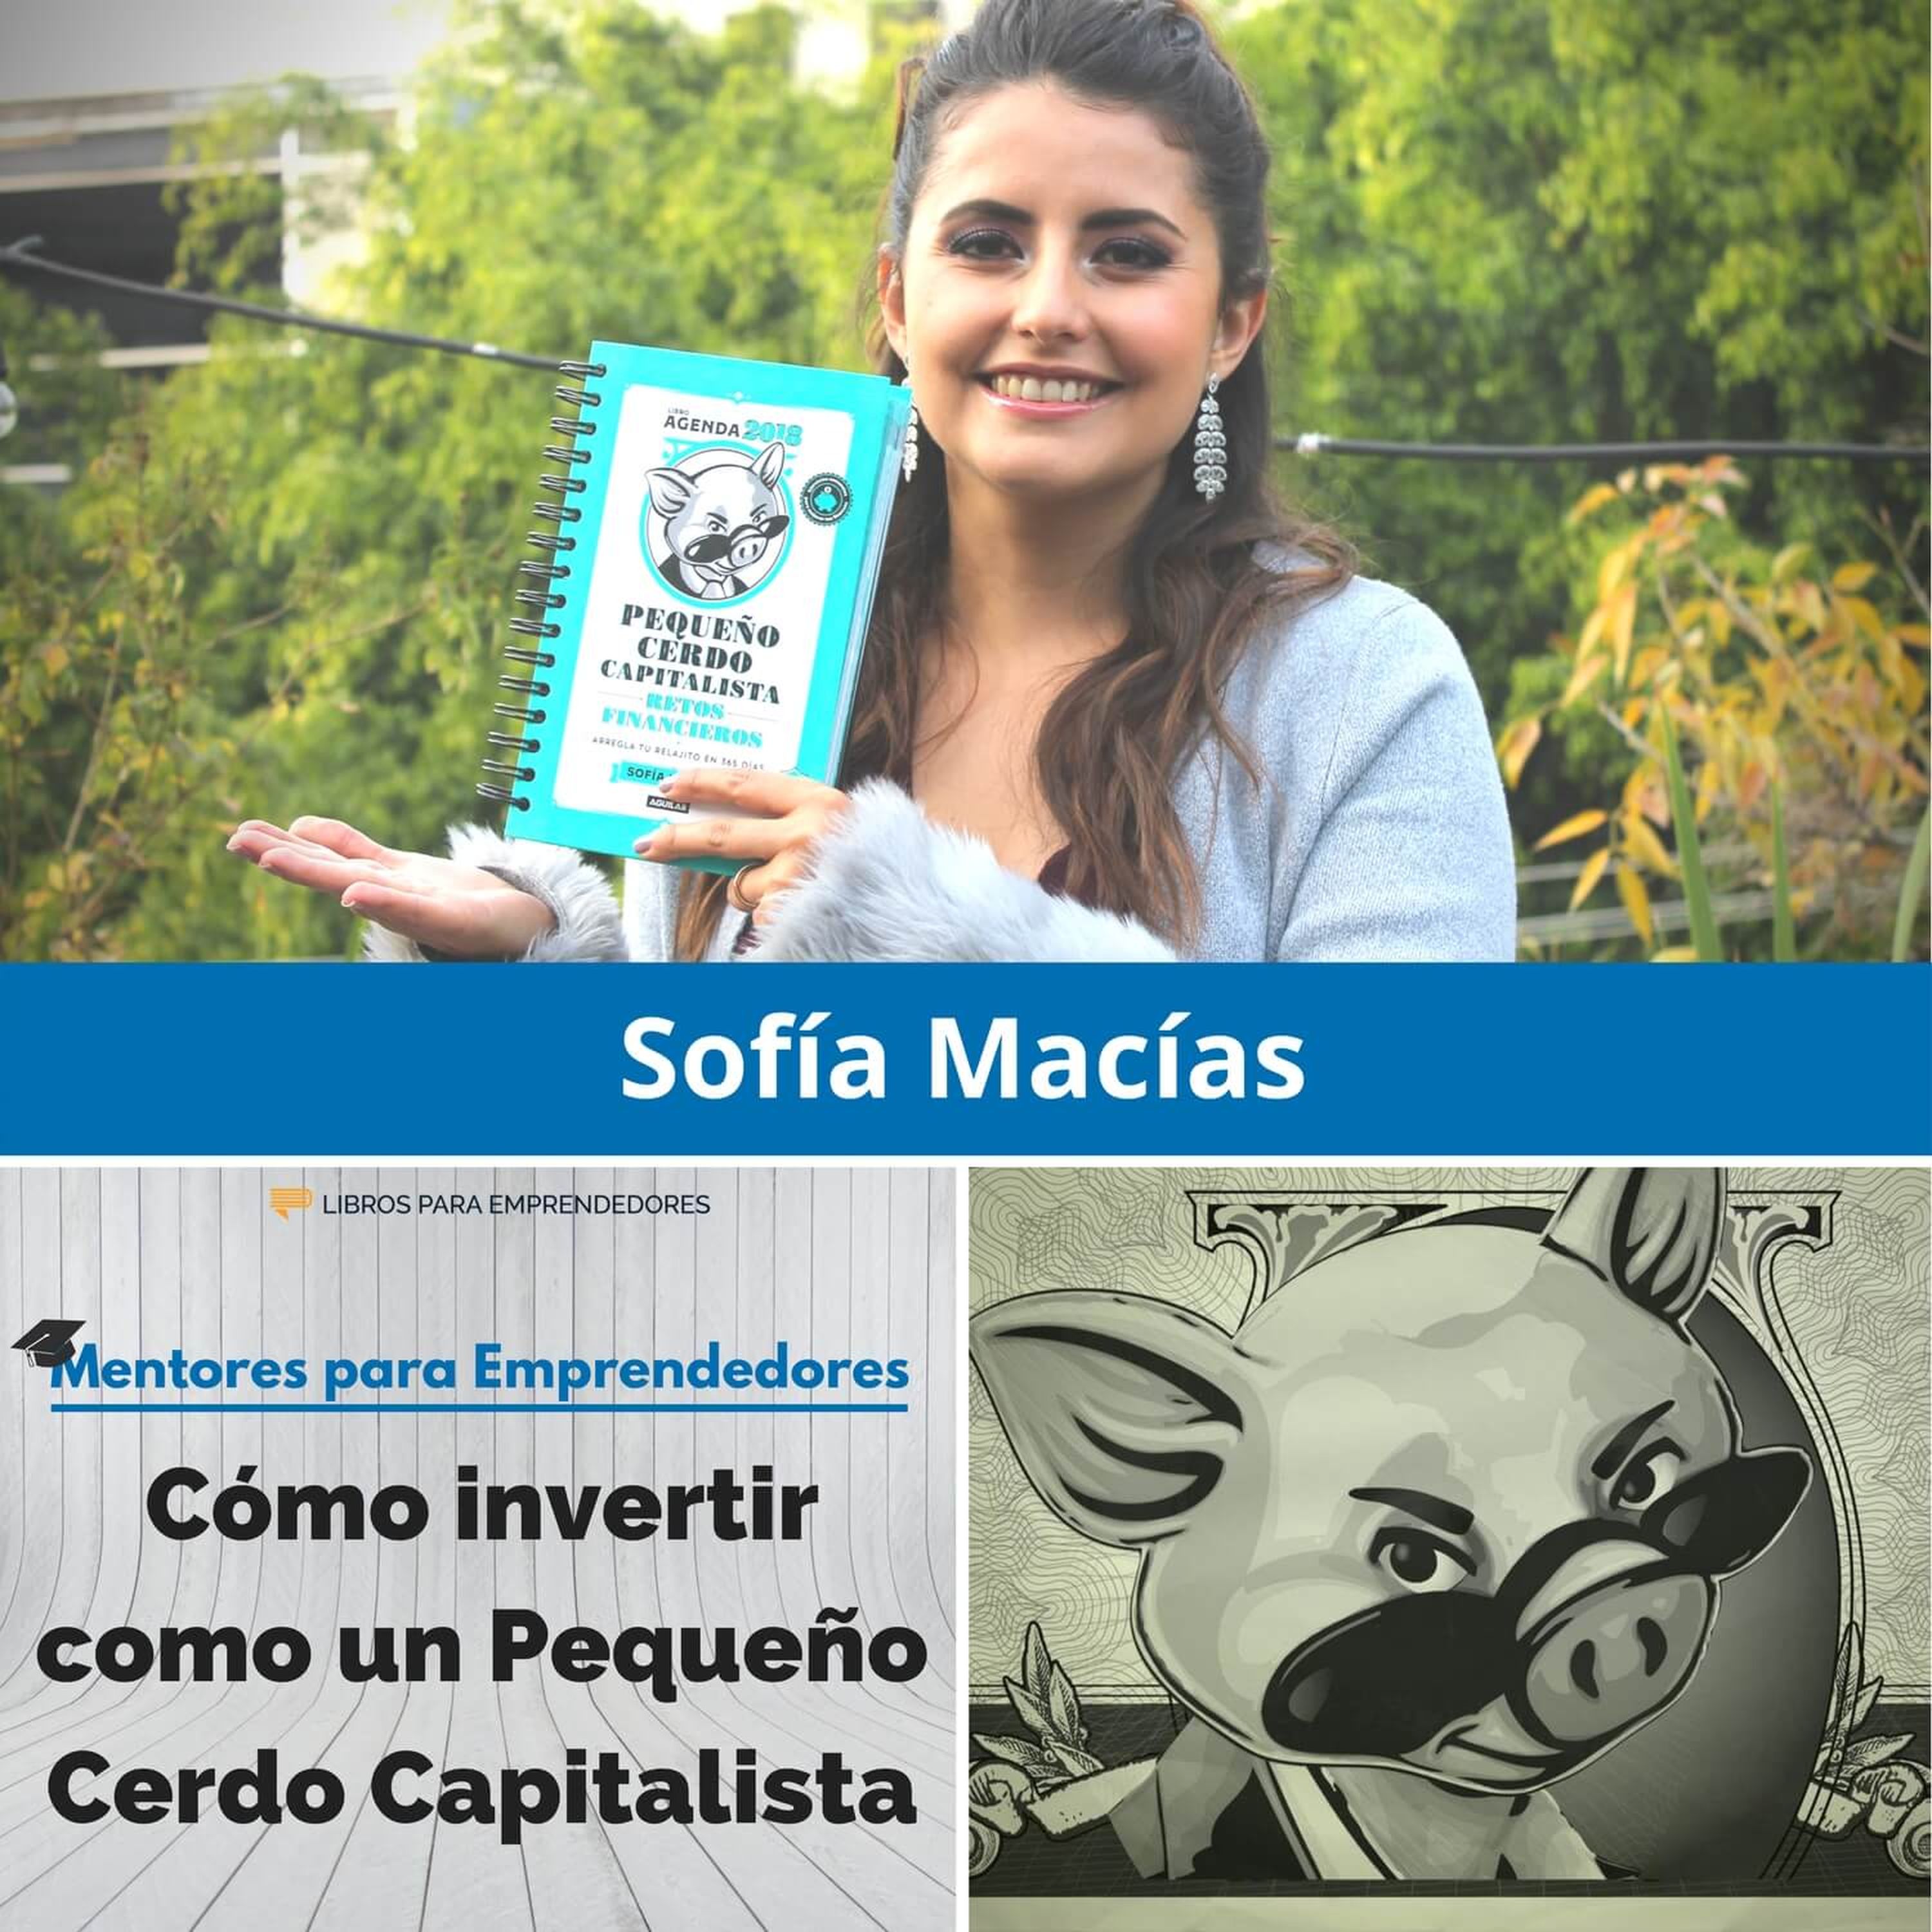 Cómo invertir como un Pequeño Cerdo Capitalista, con Sofía Macías - MPE020 - Mentores para Emprendedores